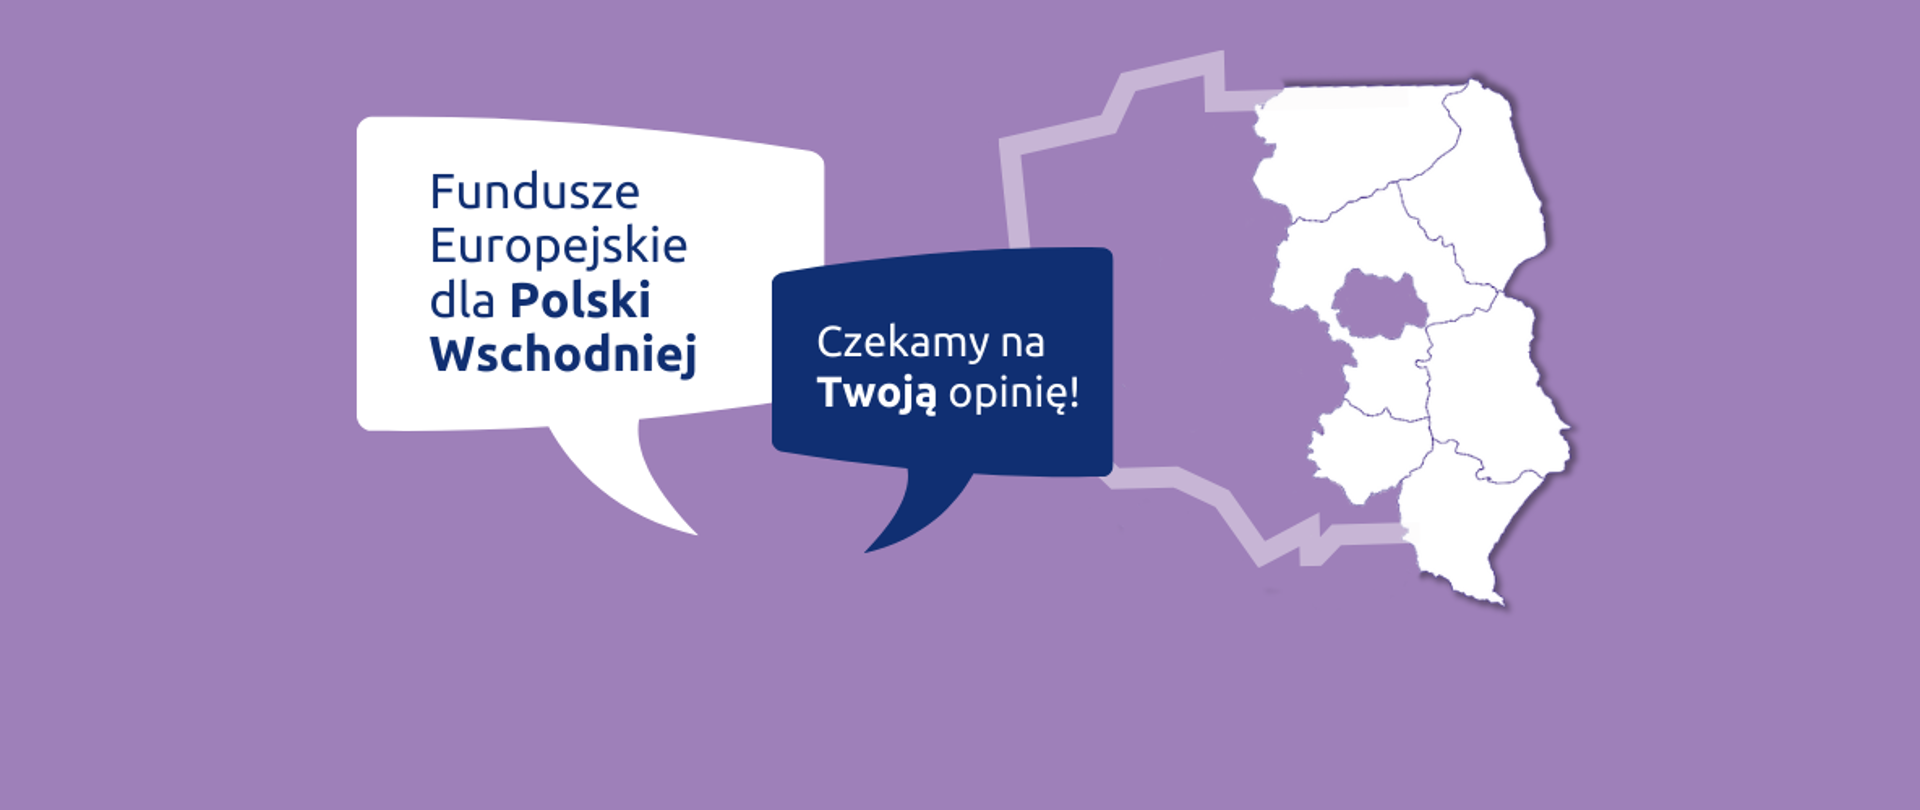 W chmurkach dwa napisy: "Fundusze Europejskie dla Polski Wschodniej" oraz "Czekamy na Twoją opinię". Obok kontur Polski z zaznaczonymi 6 województwami na wschodzie Polski.